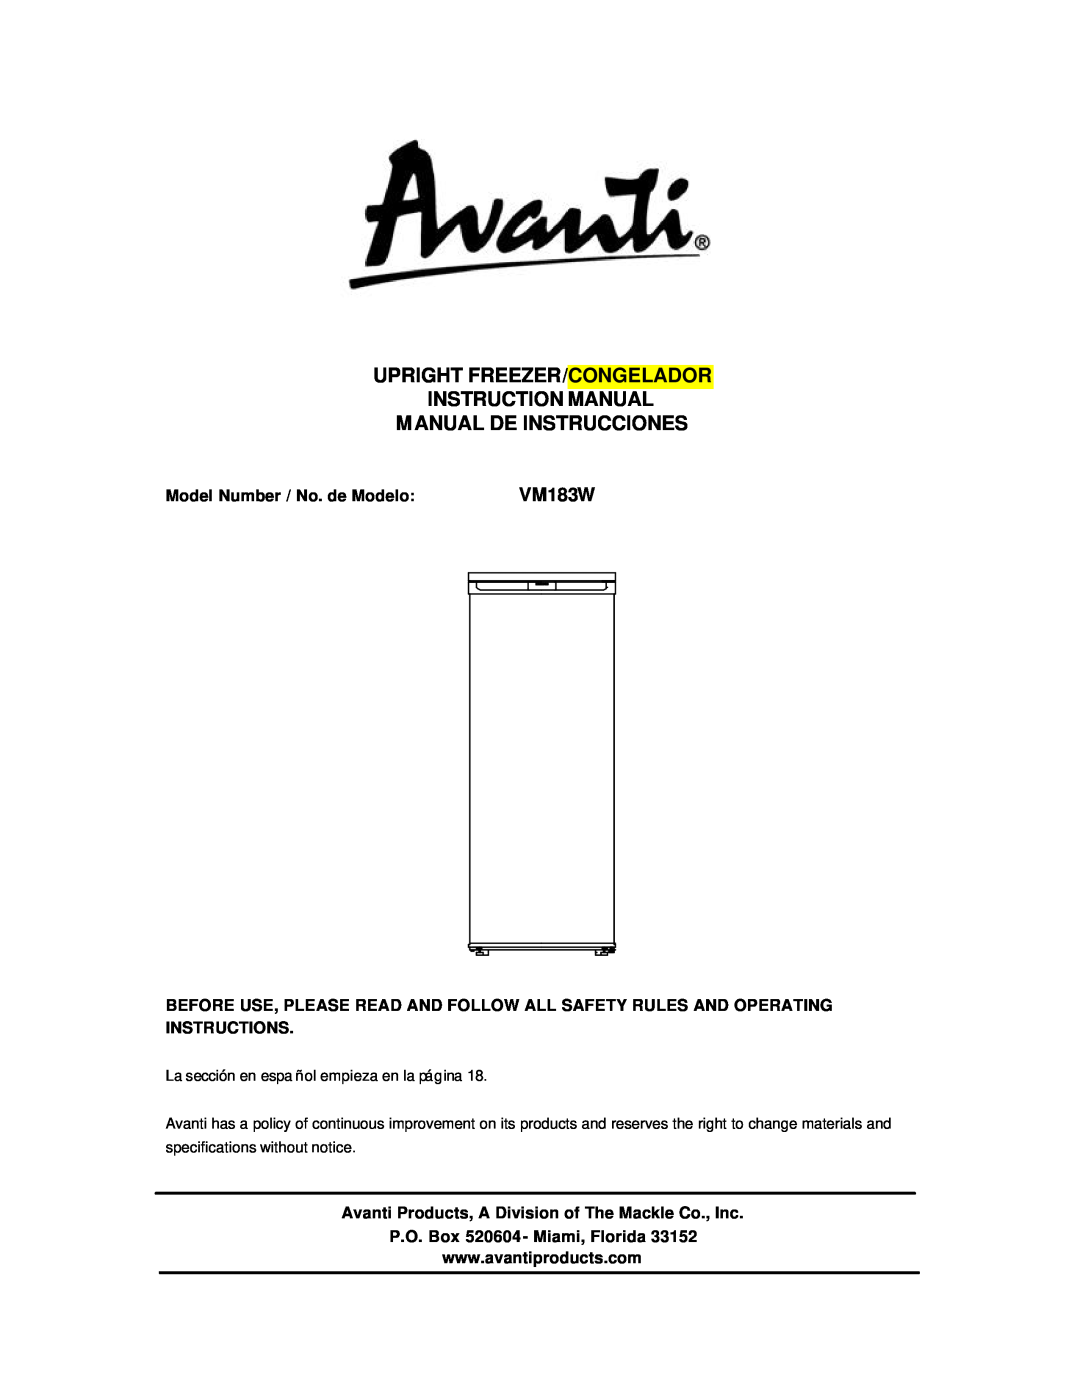 Avanti VM183W instruction manual Manual De Instrucciones, Model Number / No. de Modelo, P.O. Box 520604 - Miami, Florida 